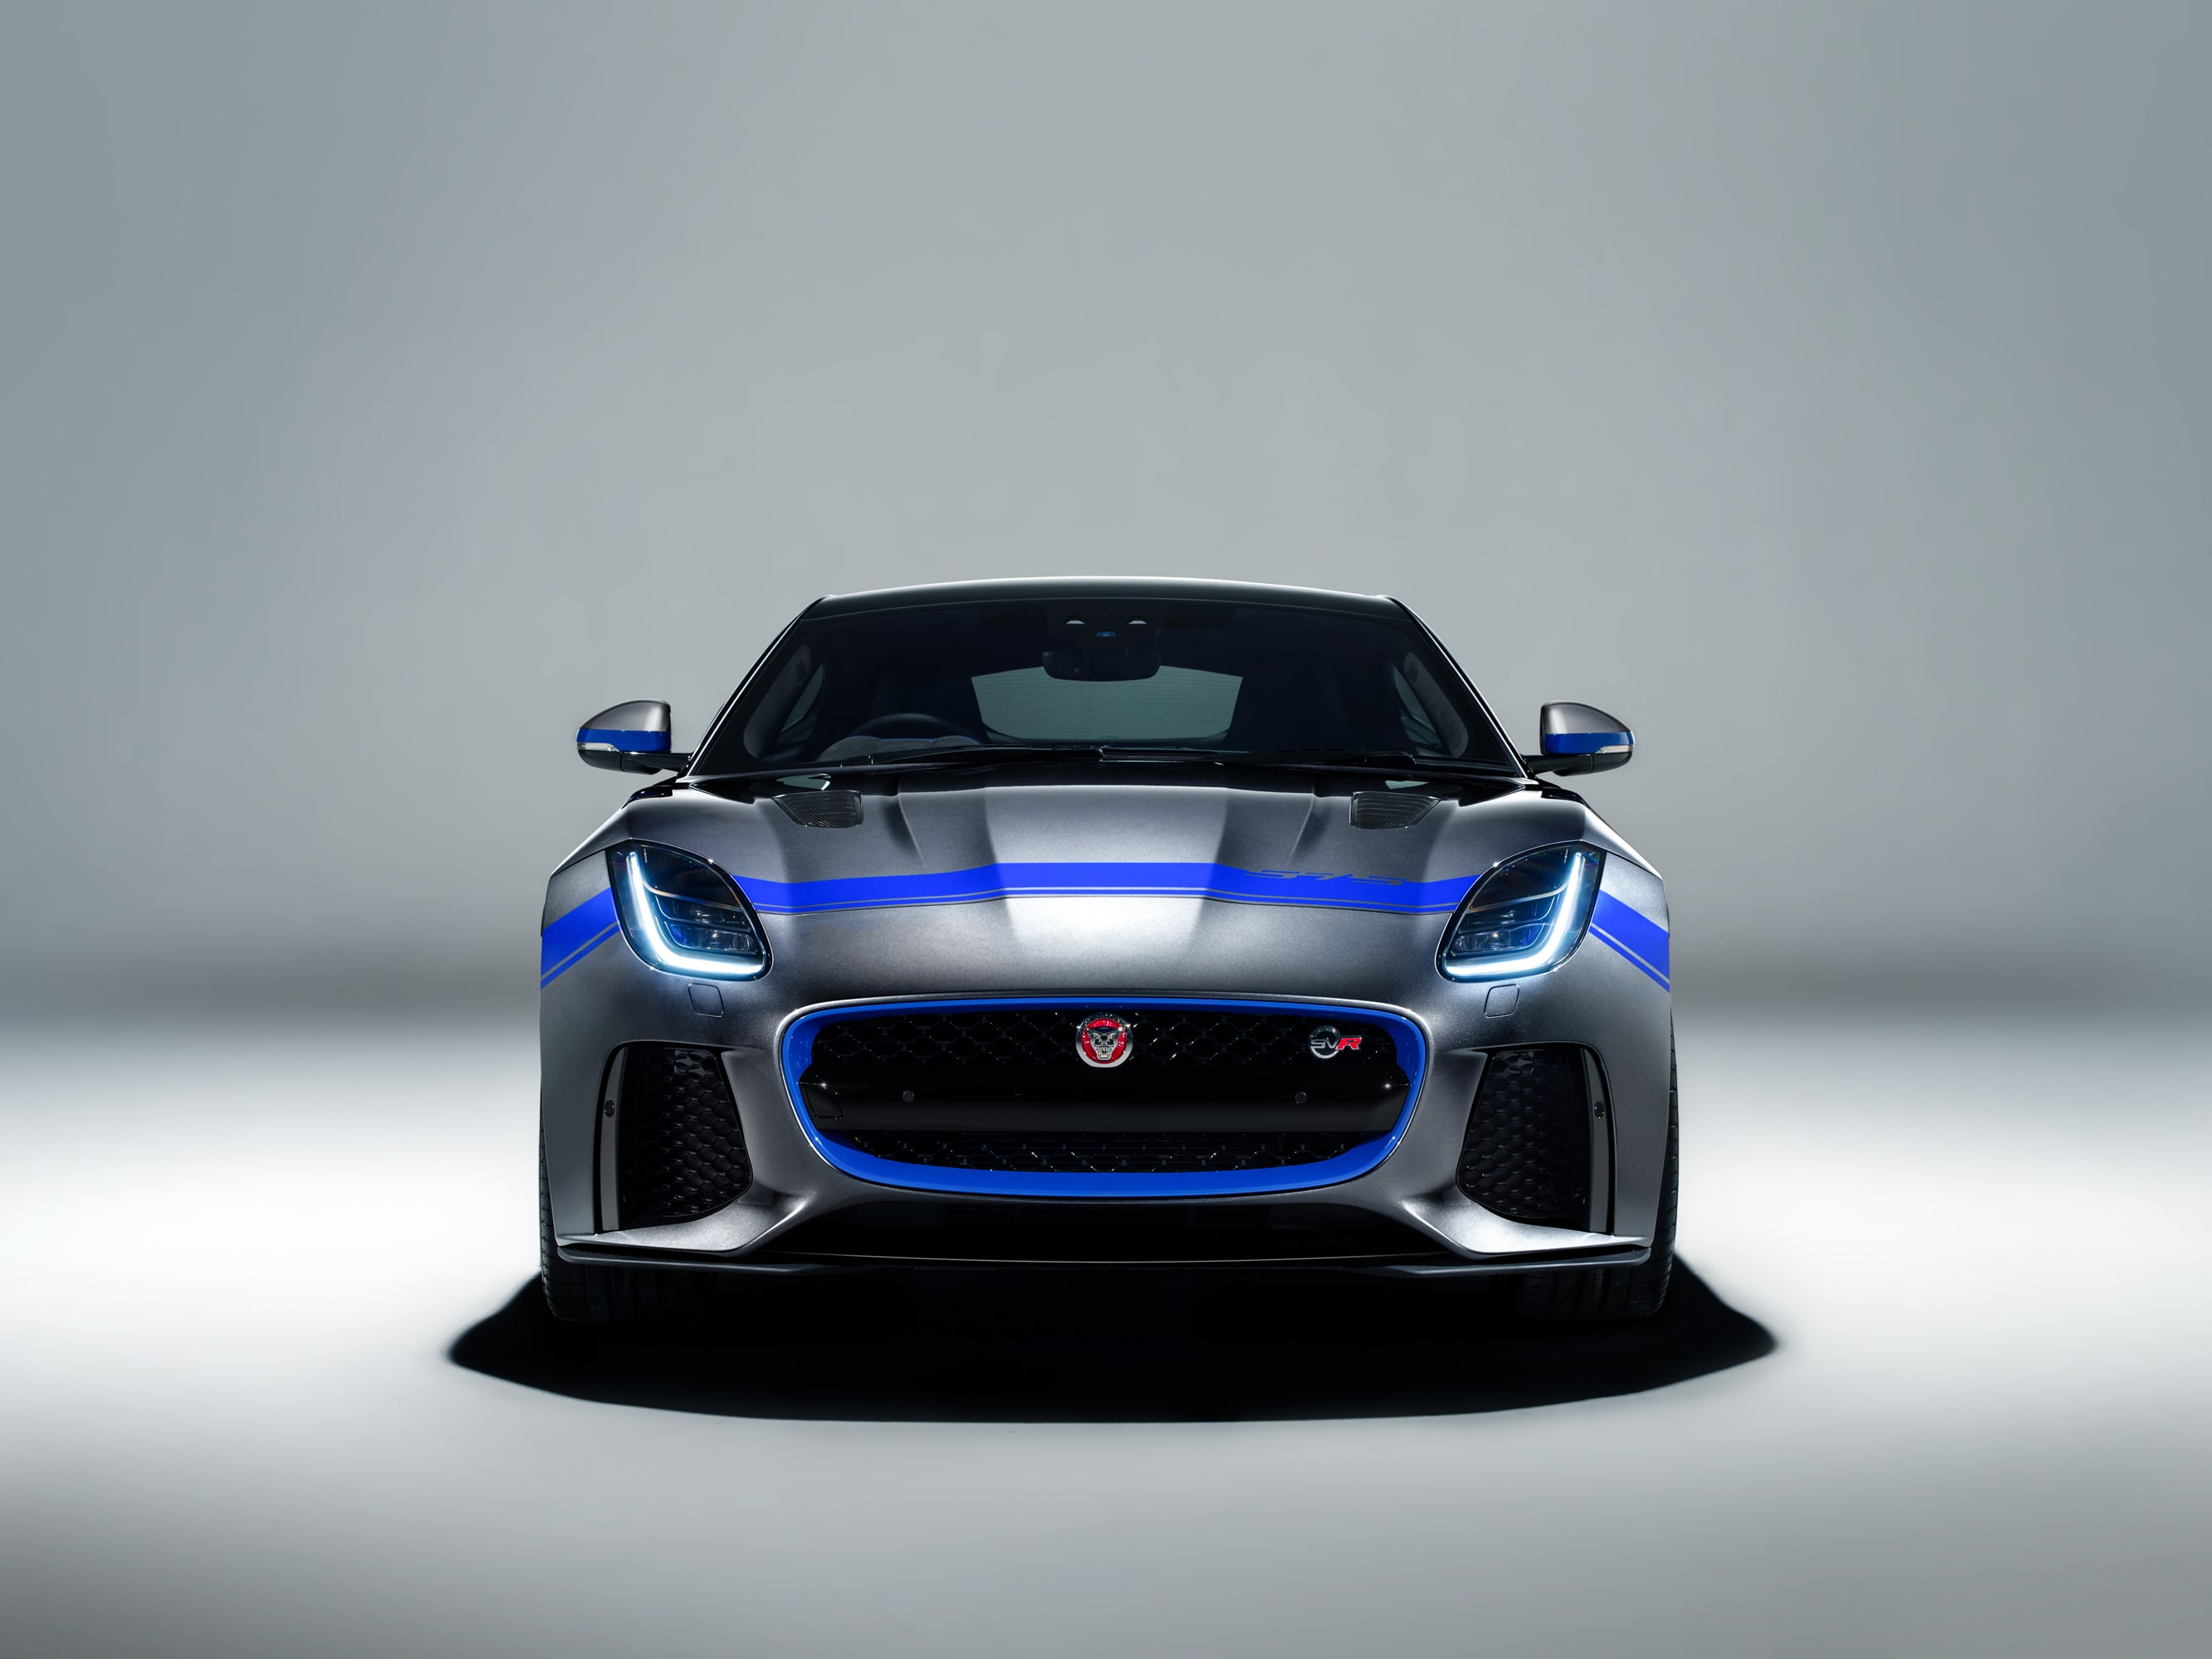 Novo pacote que mexe com o design deixa o superesportivo Jaguar F-TYPE mais atrativo